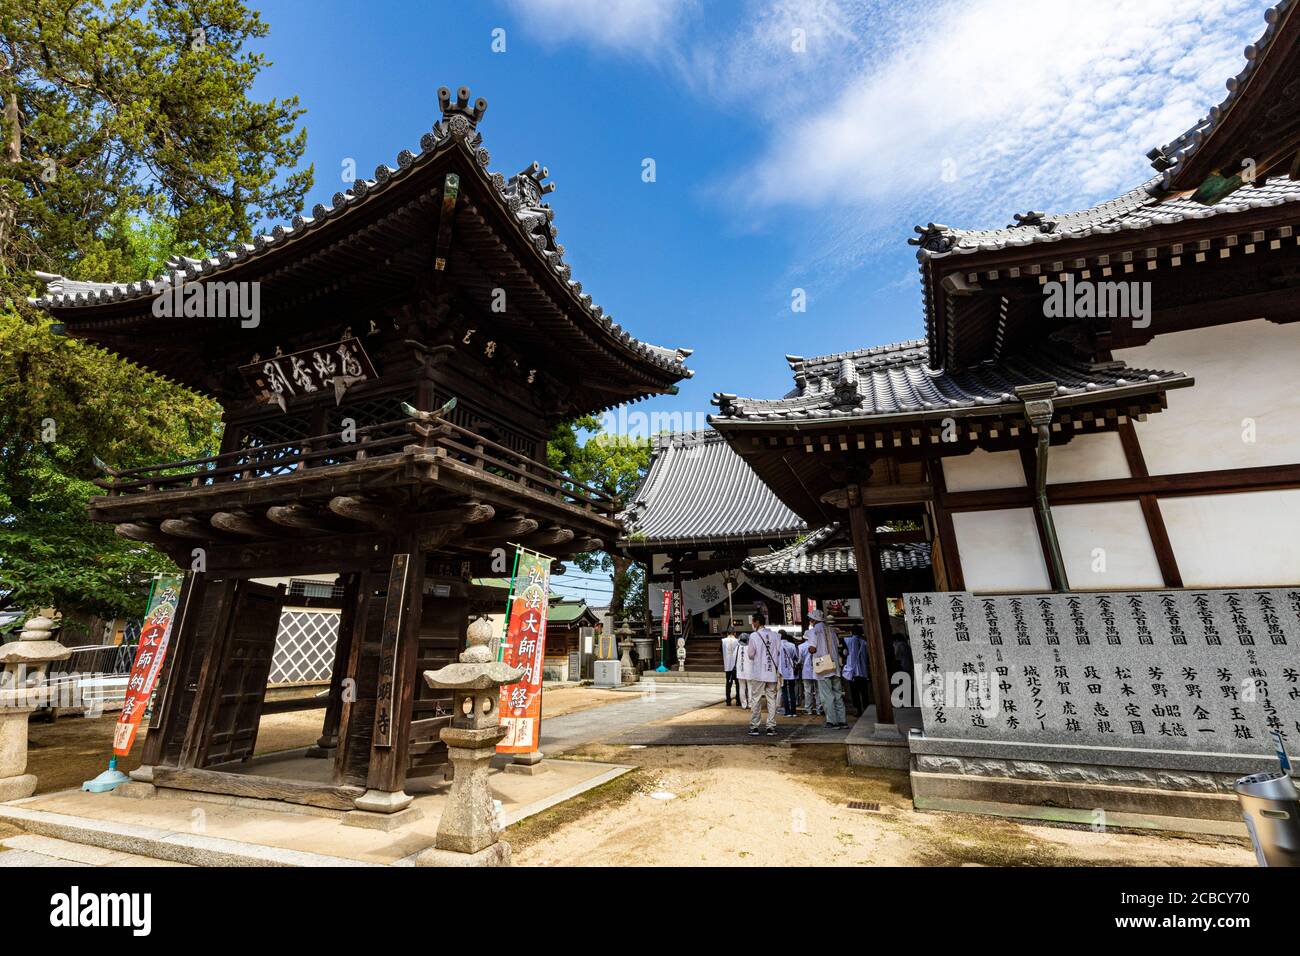 Enmyoji ist Tempel Nr. 53 auf der Shikoku Pilgerfahrt. Der Tempel hat Fliesenskulpturen auf den Dächern seiner Gebäude mit Wheel of Dharma-Funktionen Promin Stockfoto